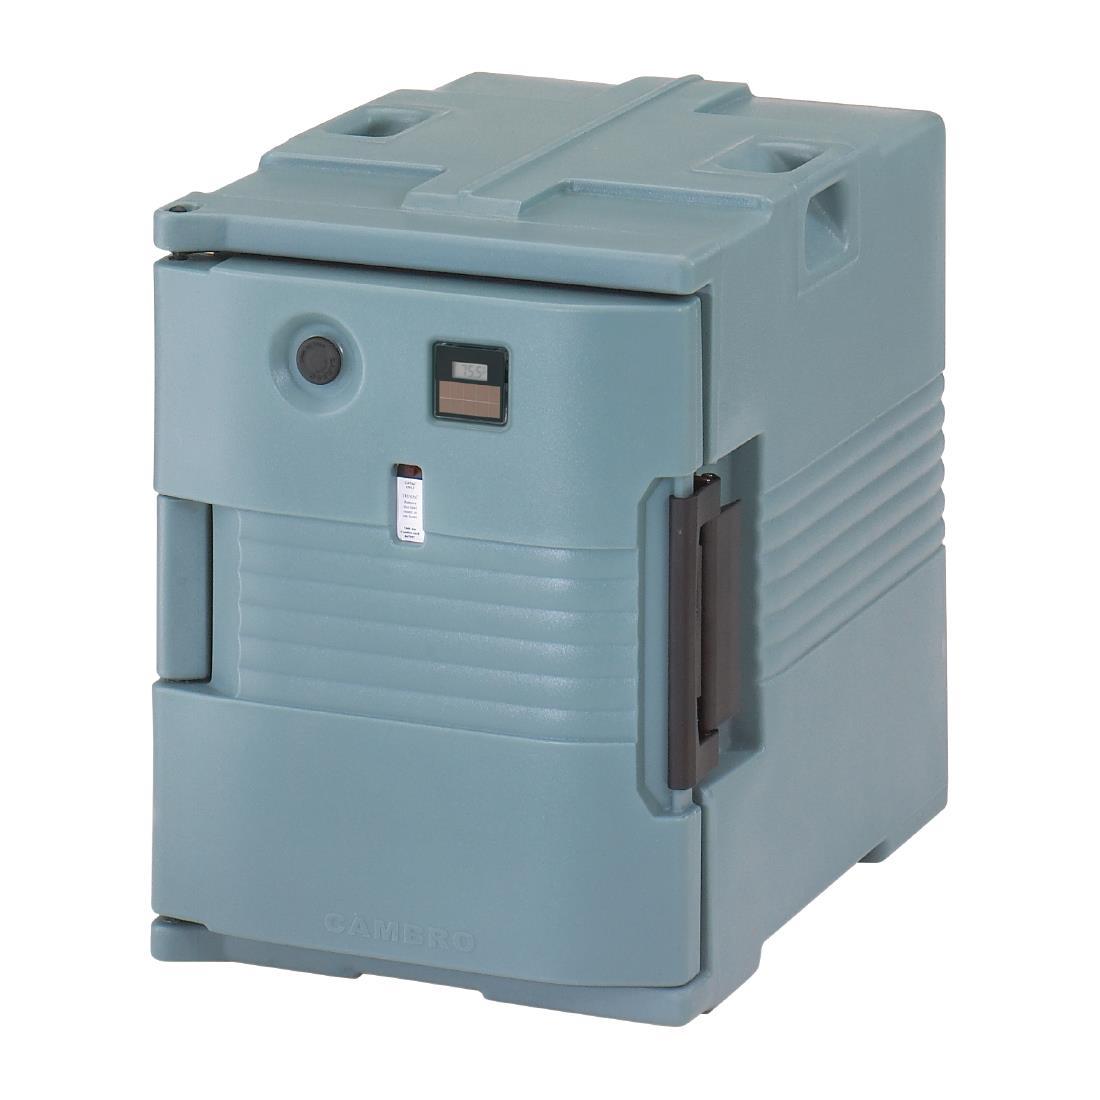 Comprar Contenedor isotérmico eléctrico para transportar alimentos calientes  52Ltr. Cambro CG143